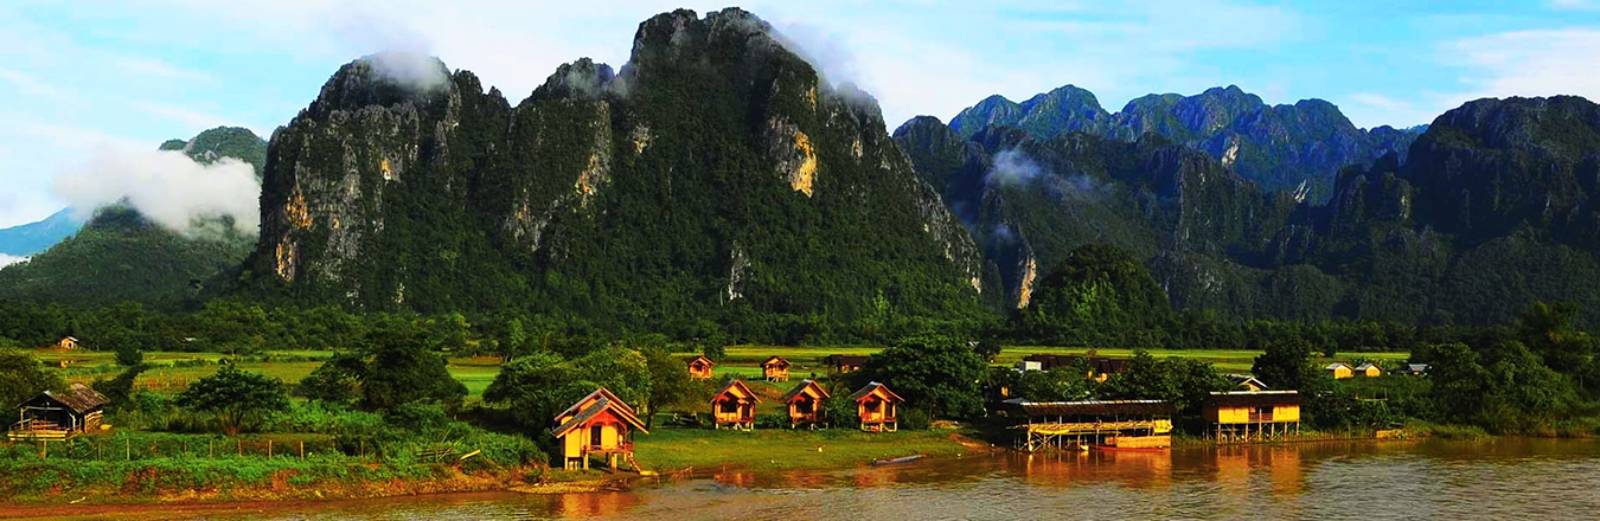 Southern Laos